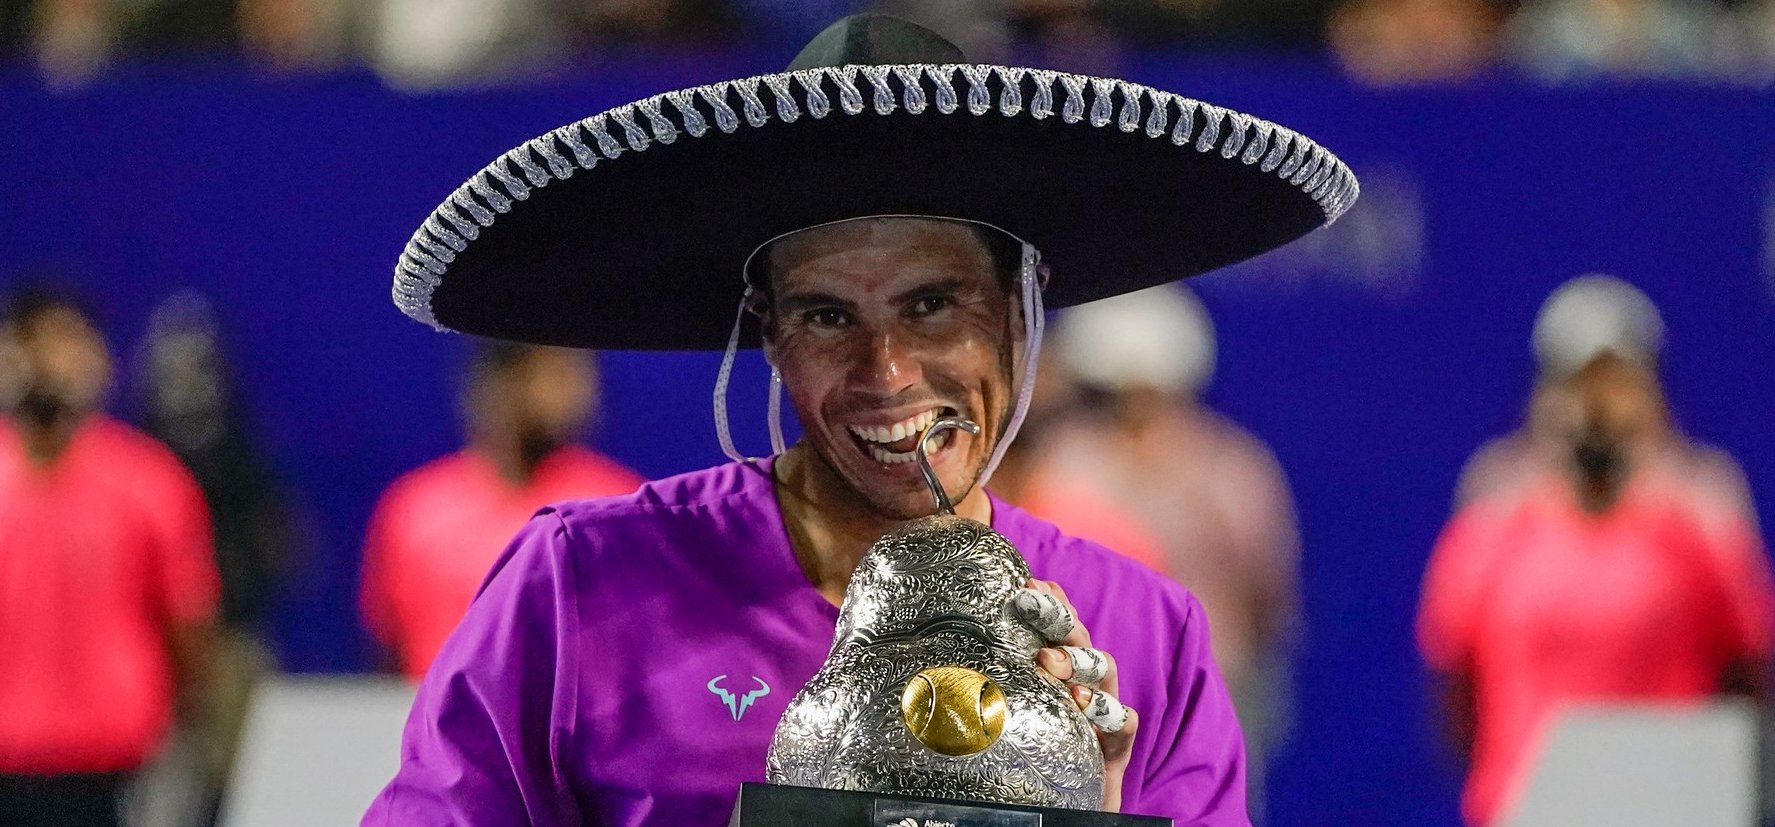 Rafael Nadal újabb csodás győzelmet zsebelt be – fotók